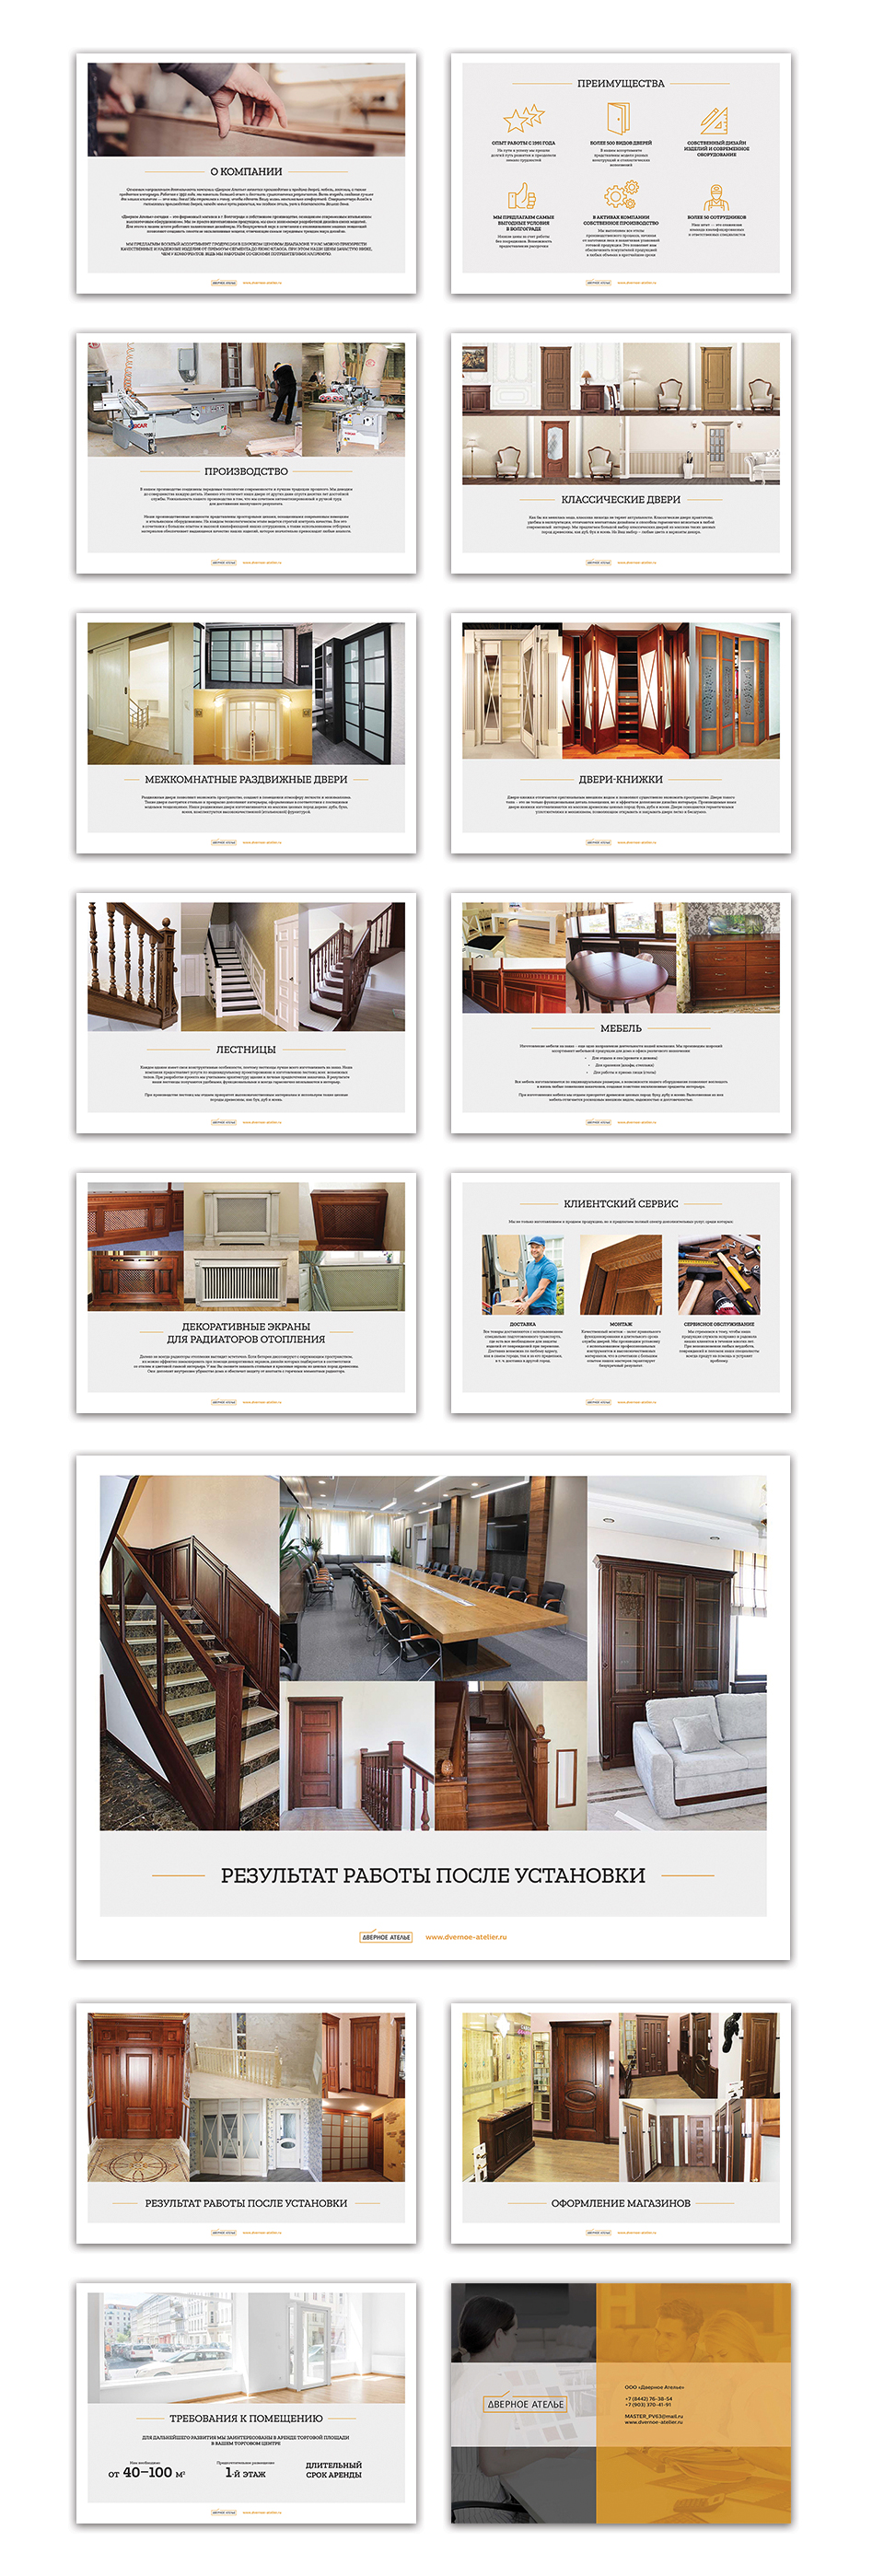 Пример презентации производителя деревянных дверей, лестниц, мебели. Слайды презентации с ассортиментом, сервис, портфолио